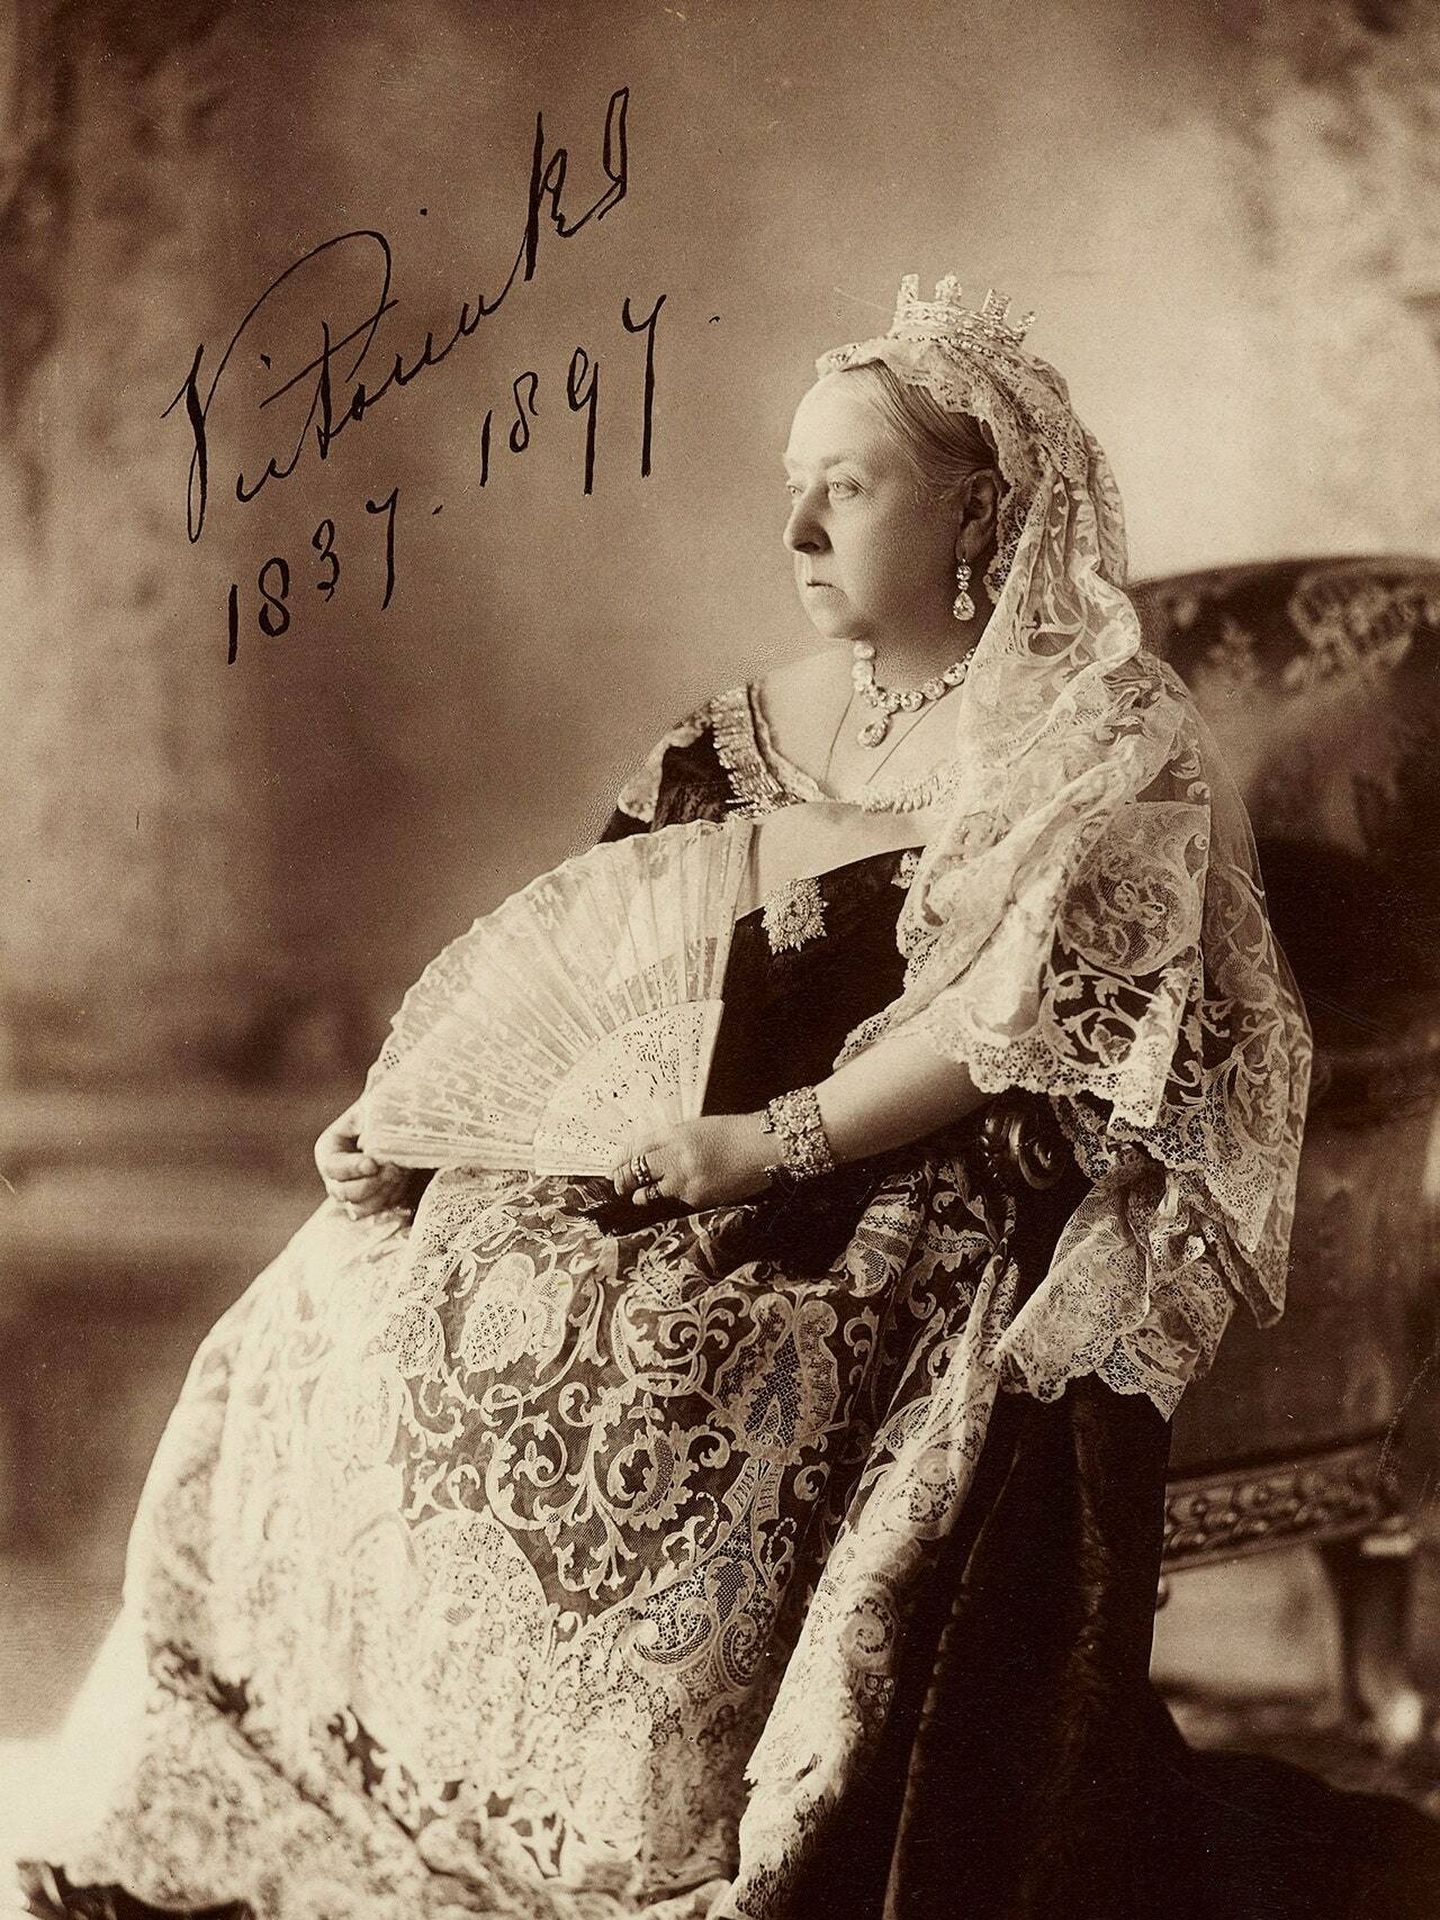 Retrato de la reina Victoria, también en la exposición. (Royal Collection Trust)